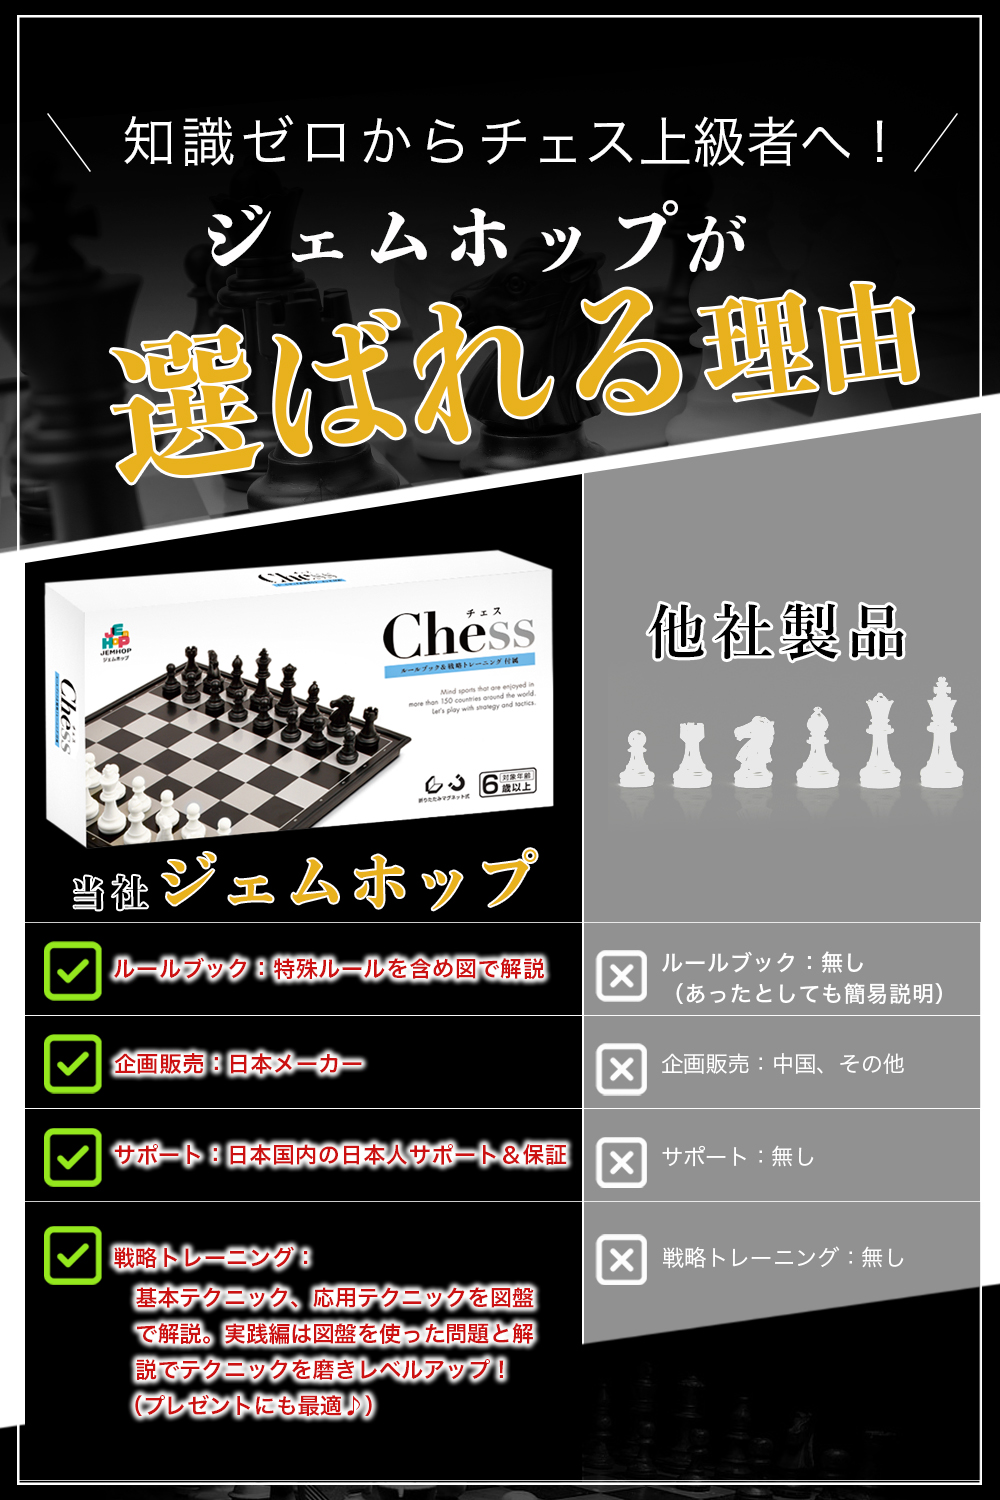 チェス chess ちぇす 国際将棋 国際チェス チェスボード チェスセット チェス盤